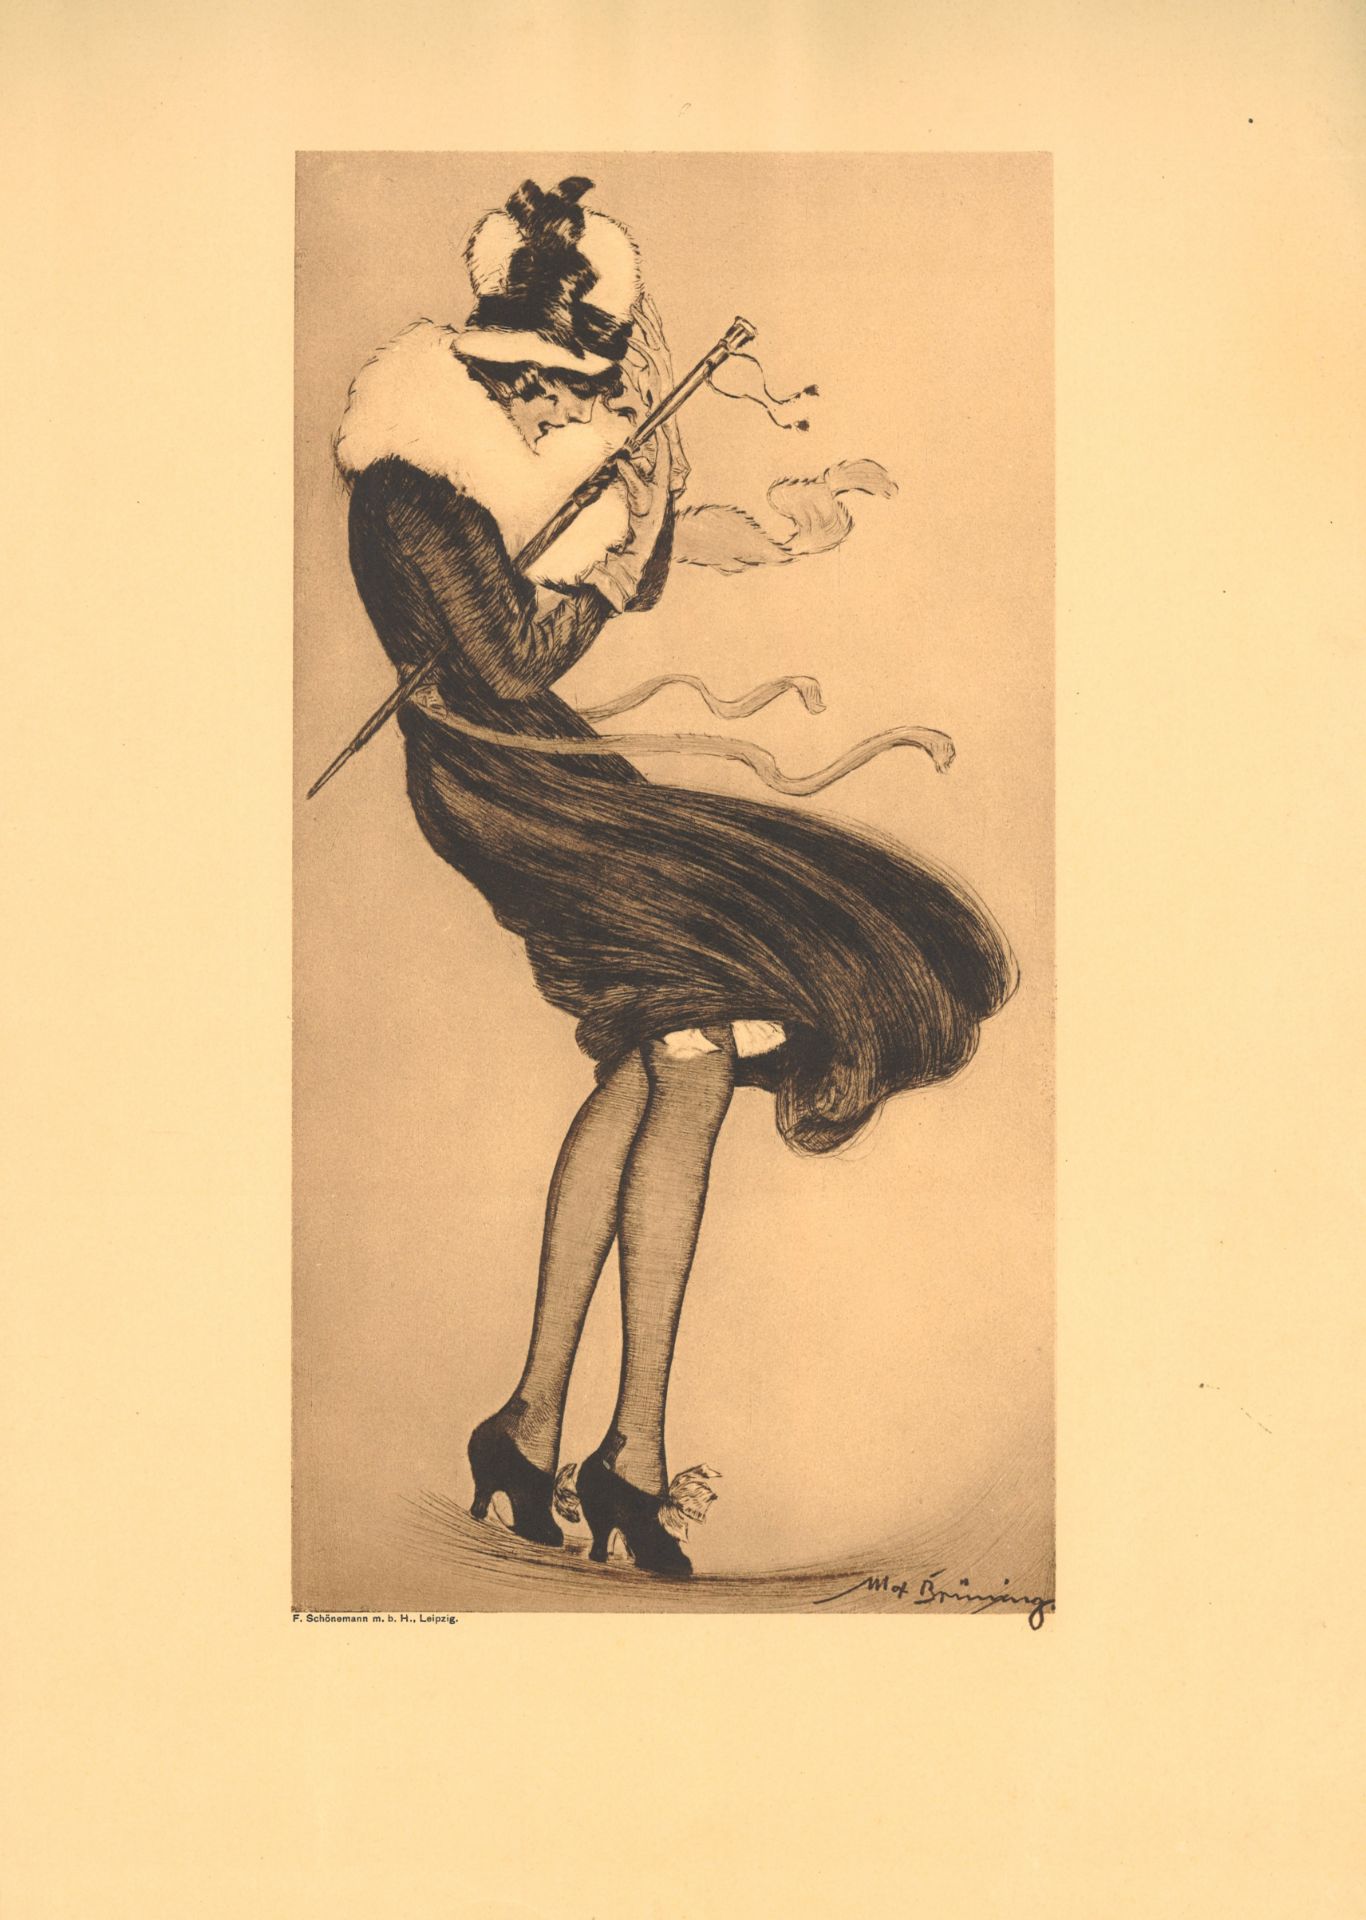 Max Brünning (1887-1968), Farbradierung "Mädchen im Sturm". Gesamtmaße des Blattes: Höhe ca. 48